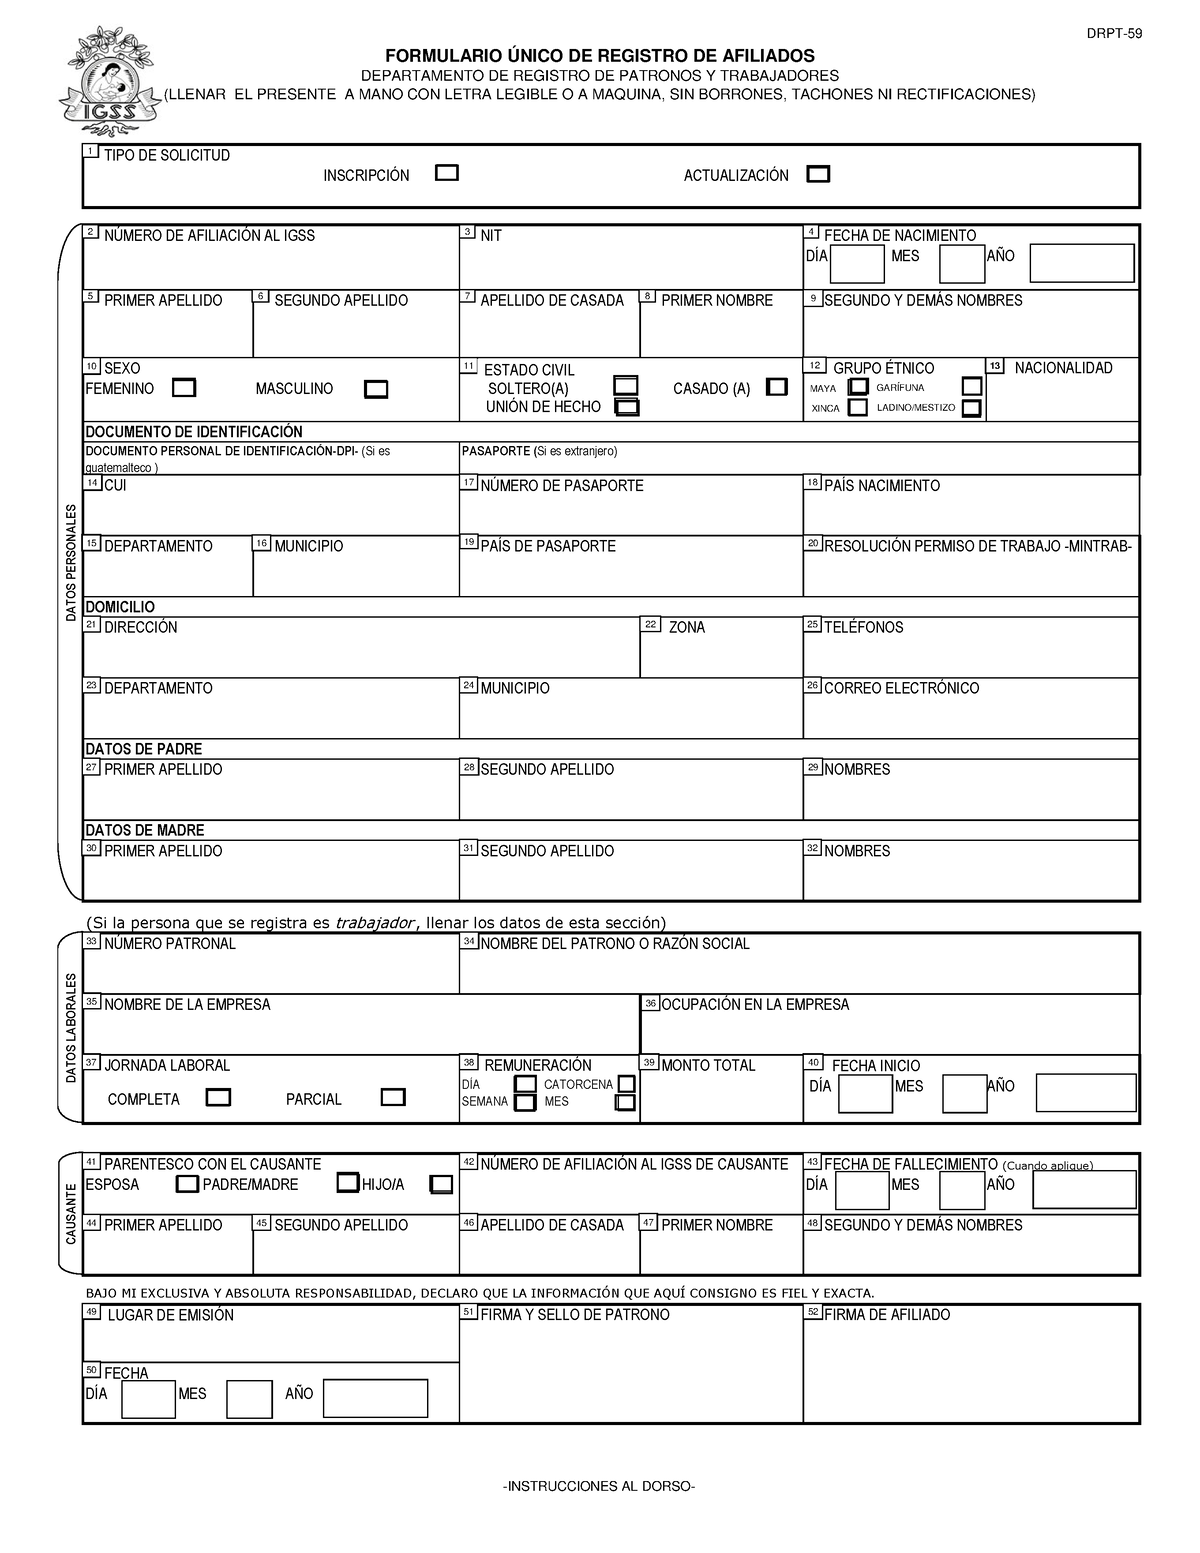 formulario drpt 59 igss formulario Único de registro de afiliados